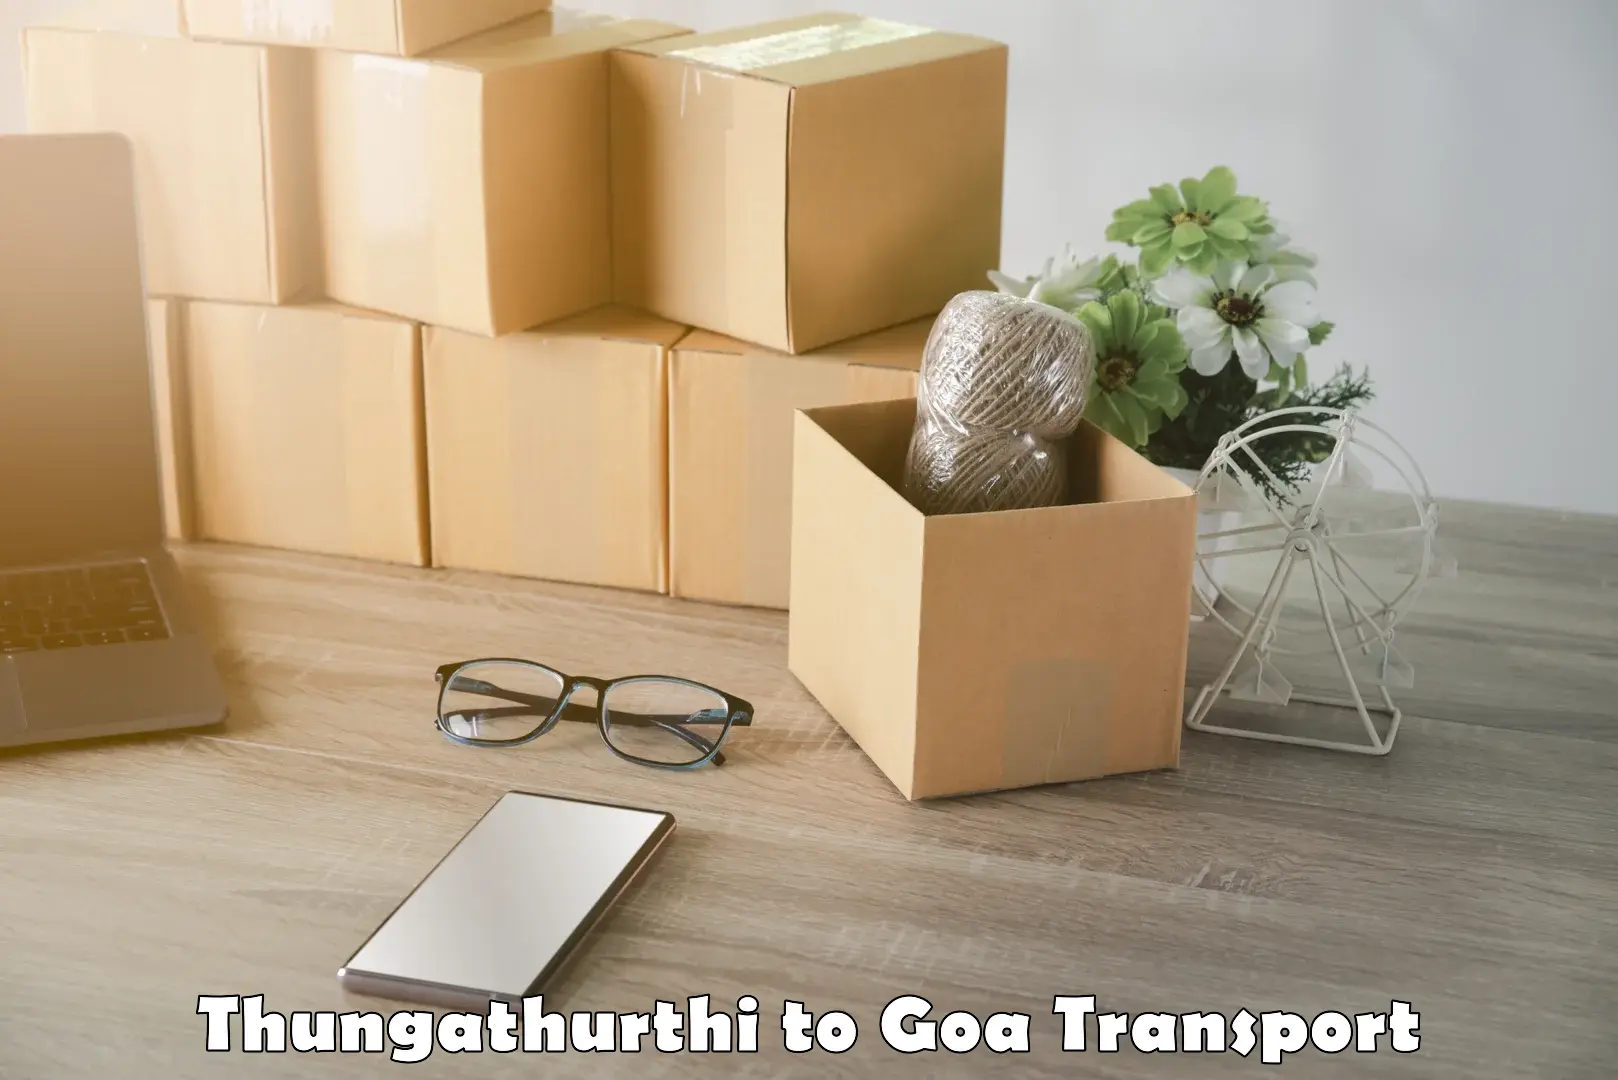 Nearby transport service Thungathurthi to Vasco da Gama